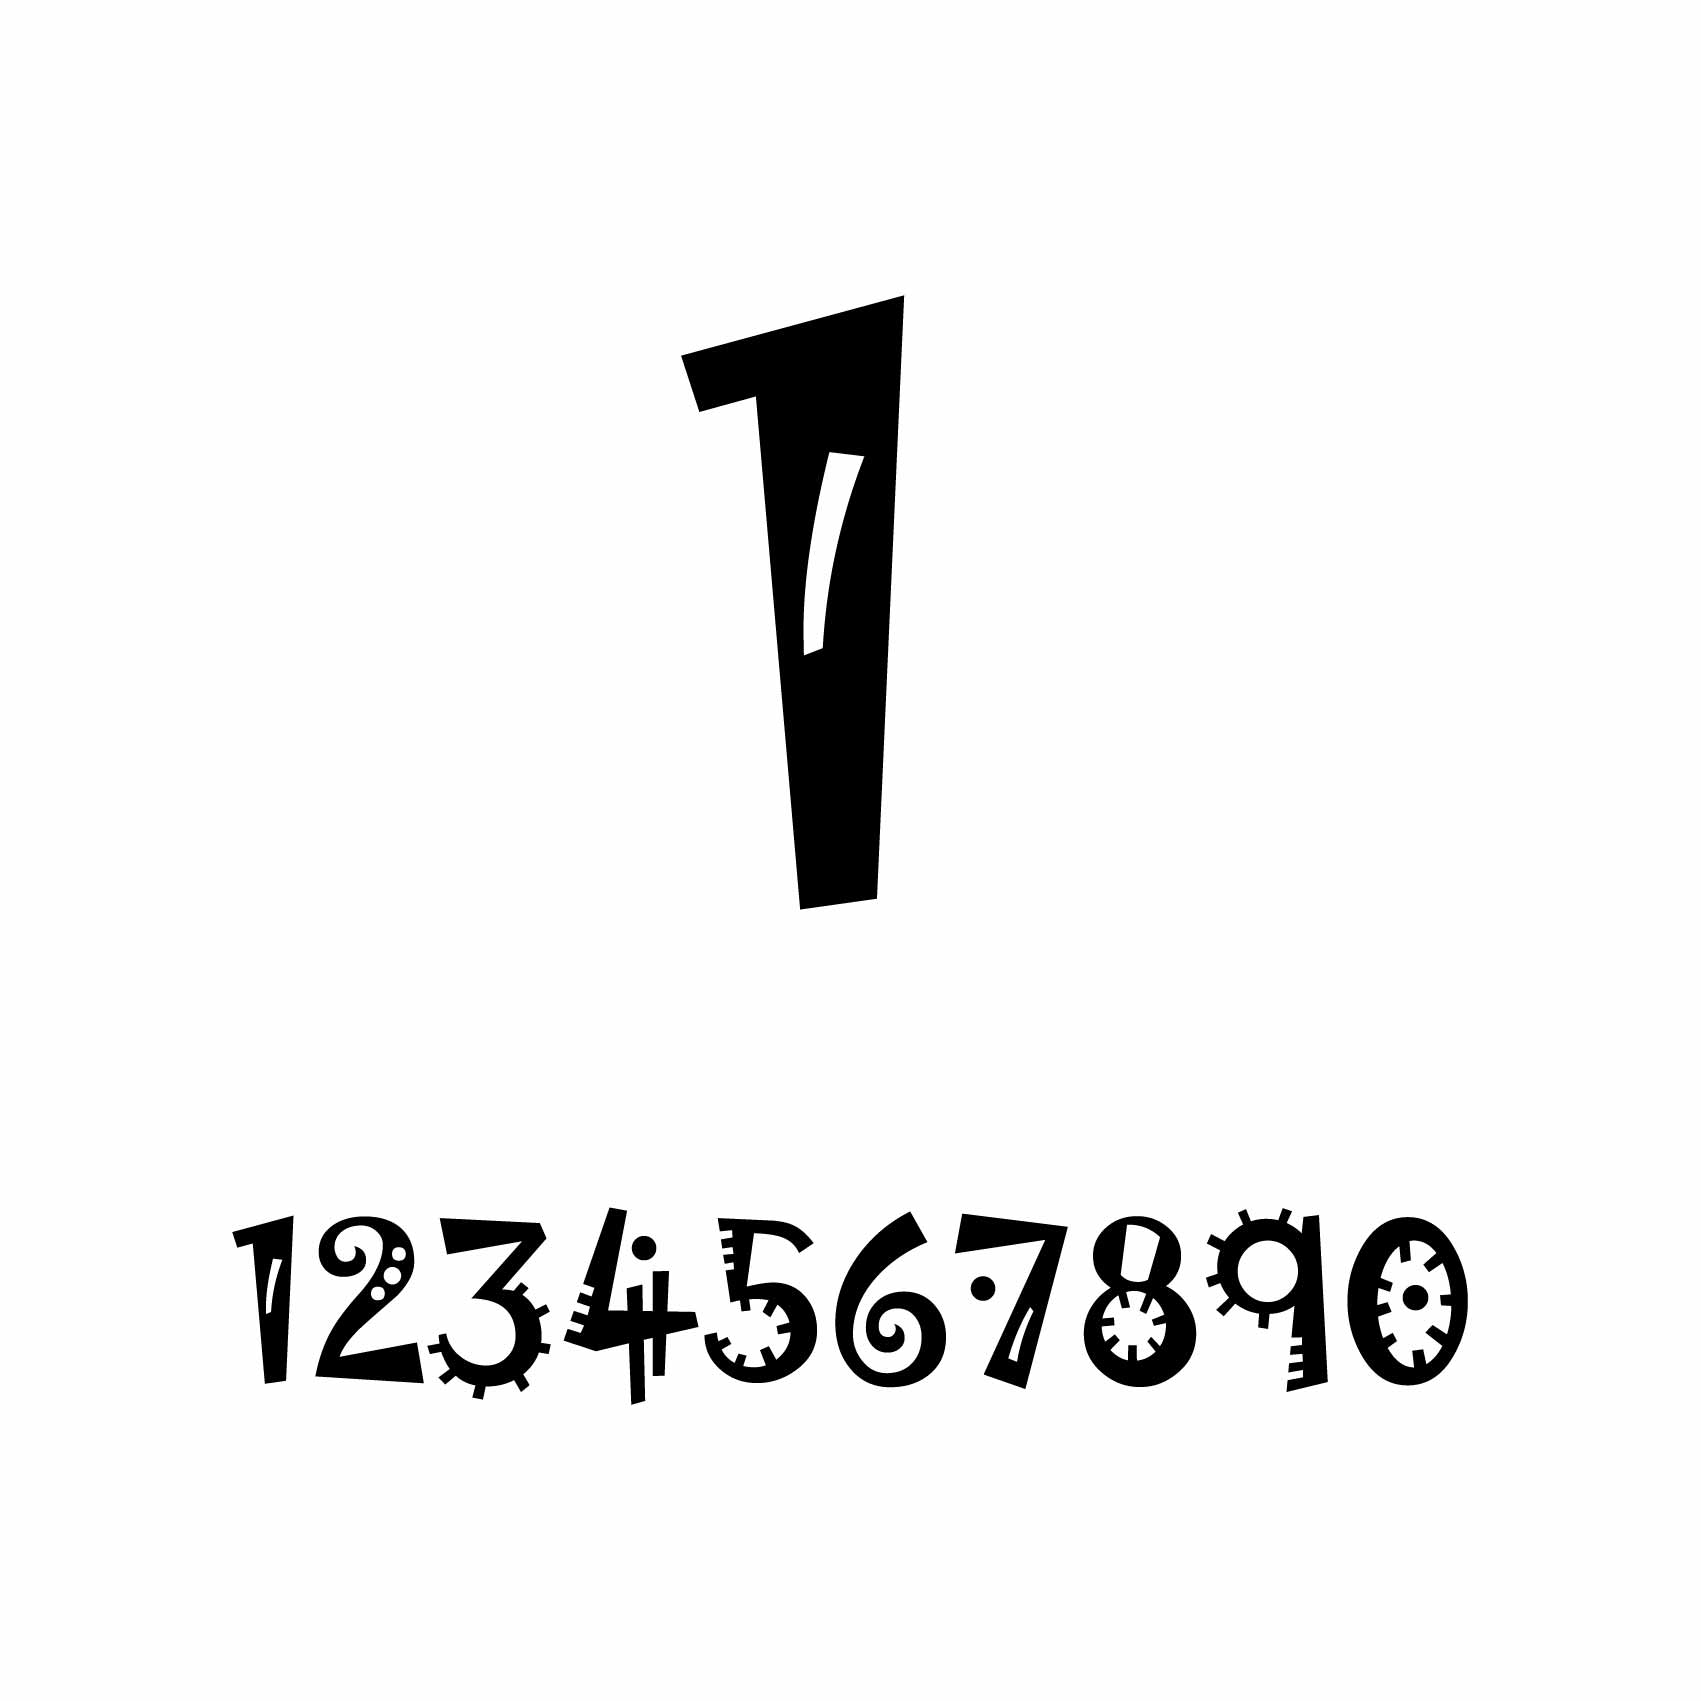 stickers-numéro-personnalisé-ref11numero-autocollant-numero-personnalise-sticker-chiffre-personnalisable-nombre-rallye-porte-1-2-3-4-5-6-7-8-9-0-lettrage